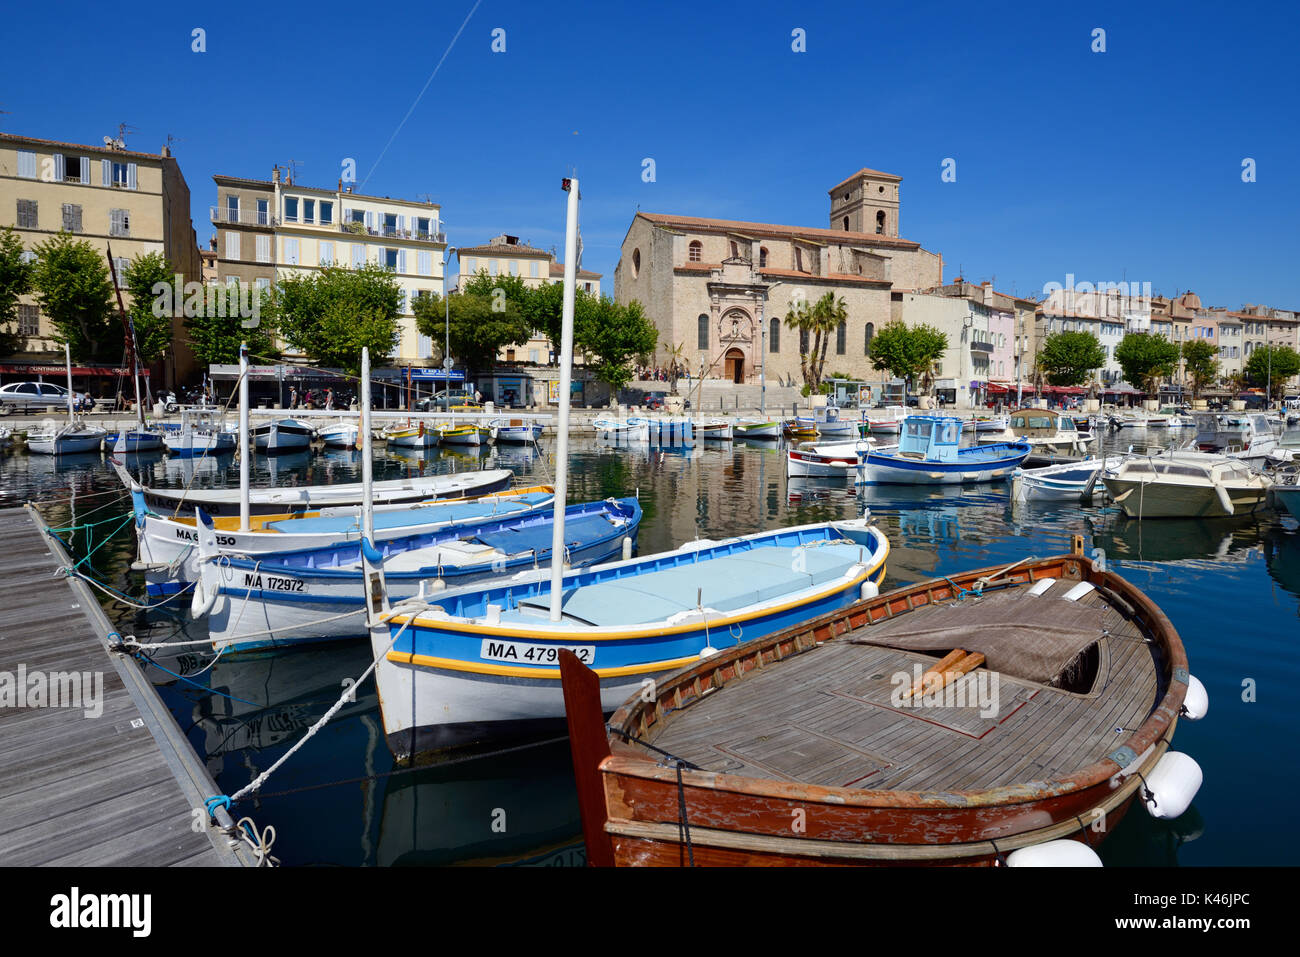 Bateaux de pêche traditionnels en bois connus sous le nom de Pointus dans le port ou le port de la Ciotat Provence Côte d'Azur France Banque D'Images